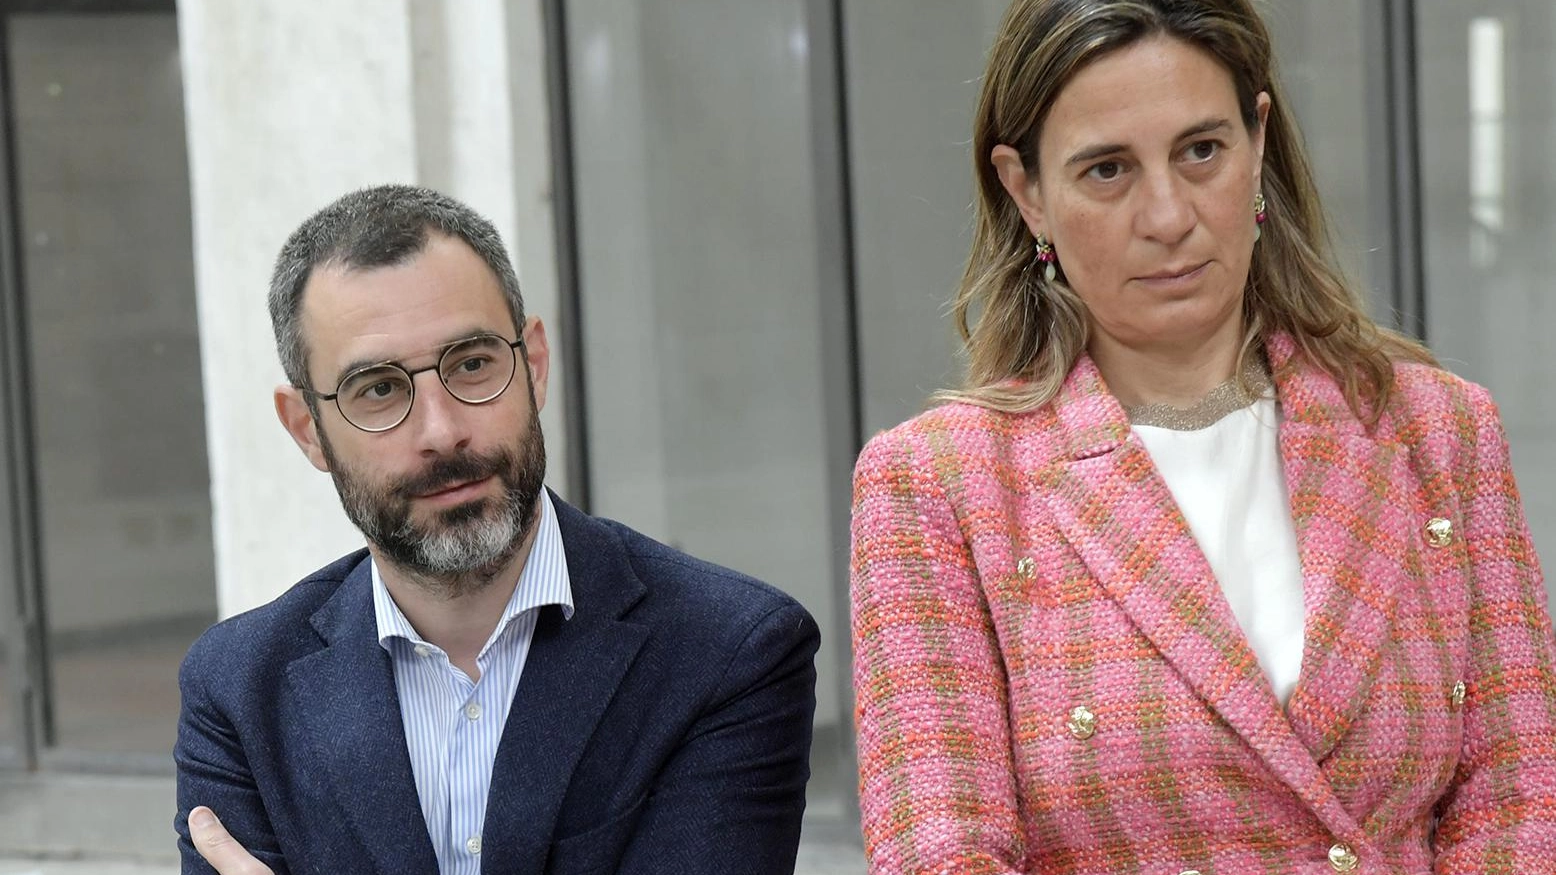 20mila euro a Puccini e la sua Lucca  L’opposizione: “Cambiale elettorale“